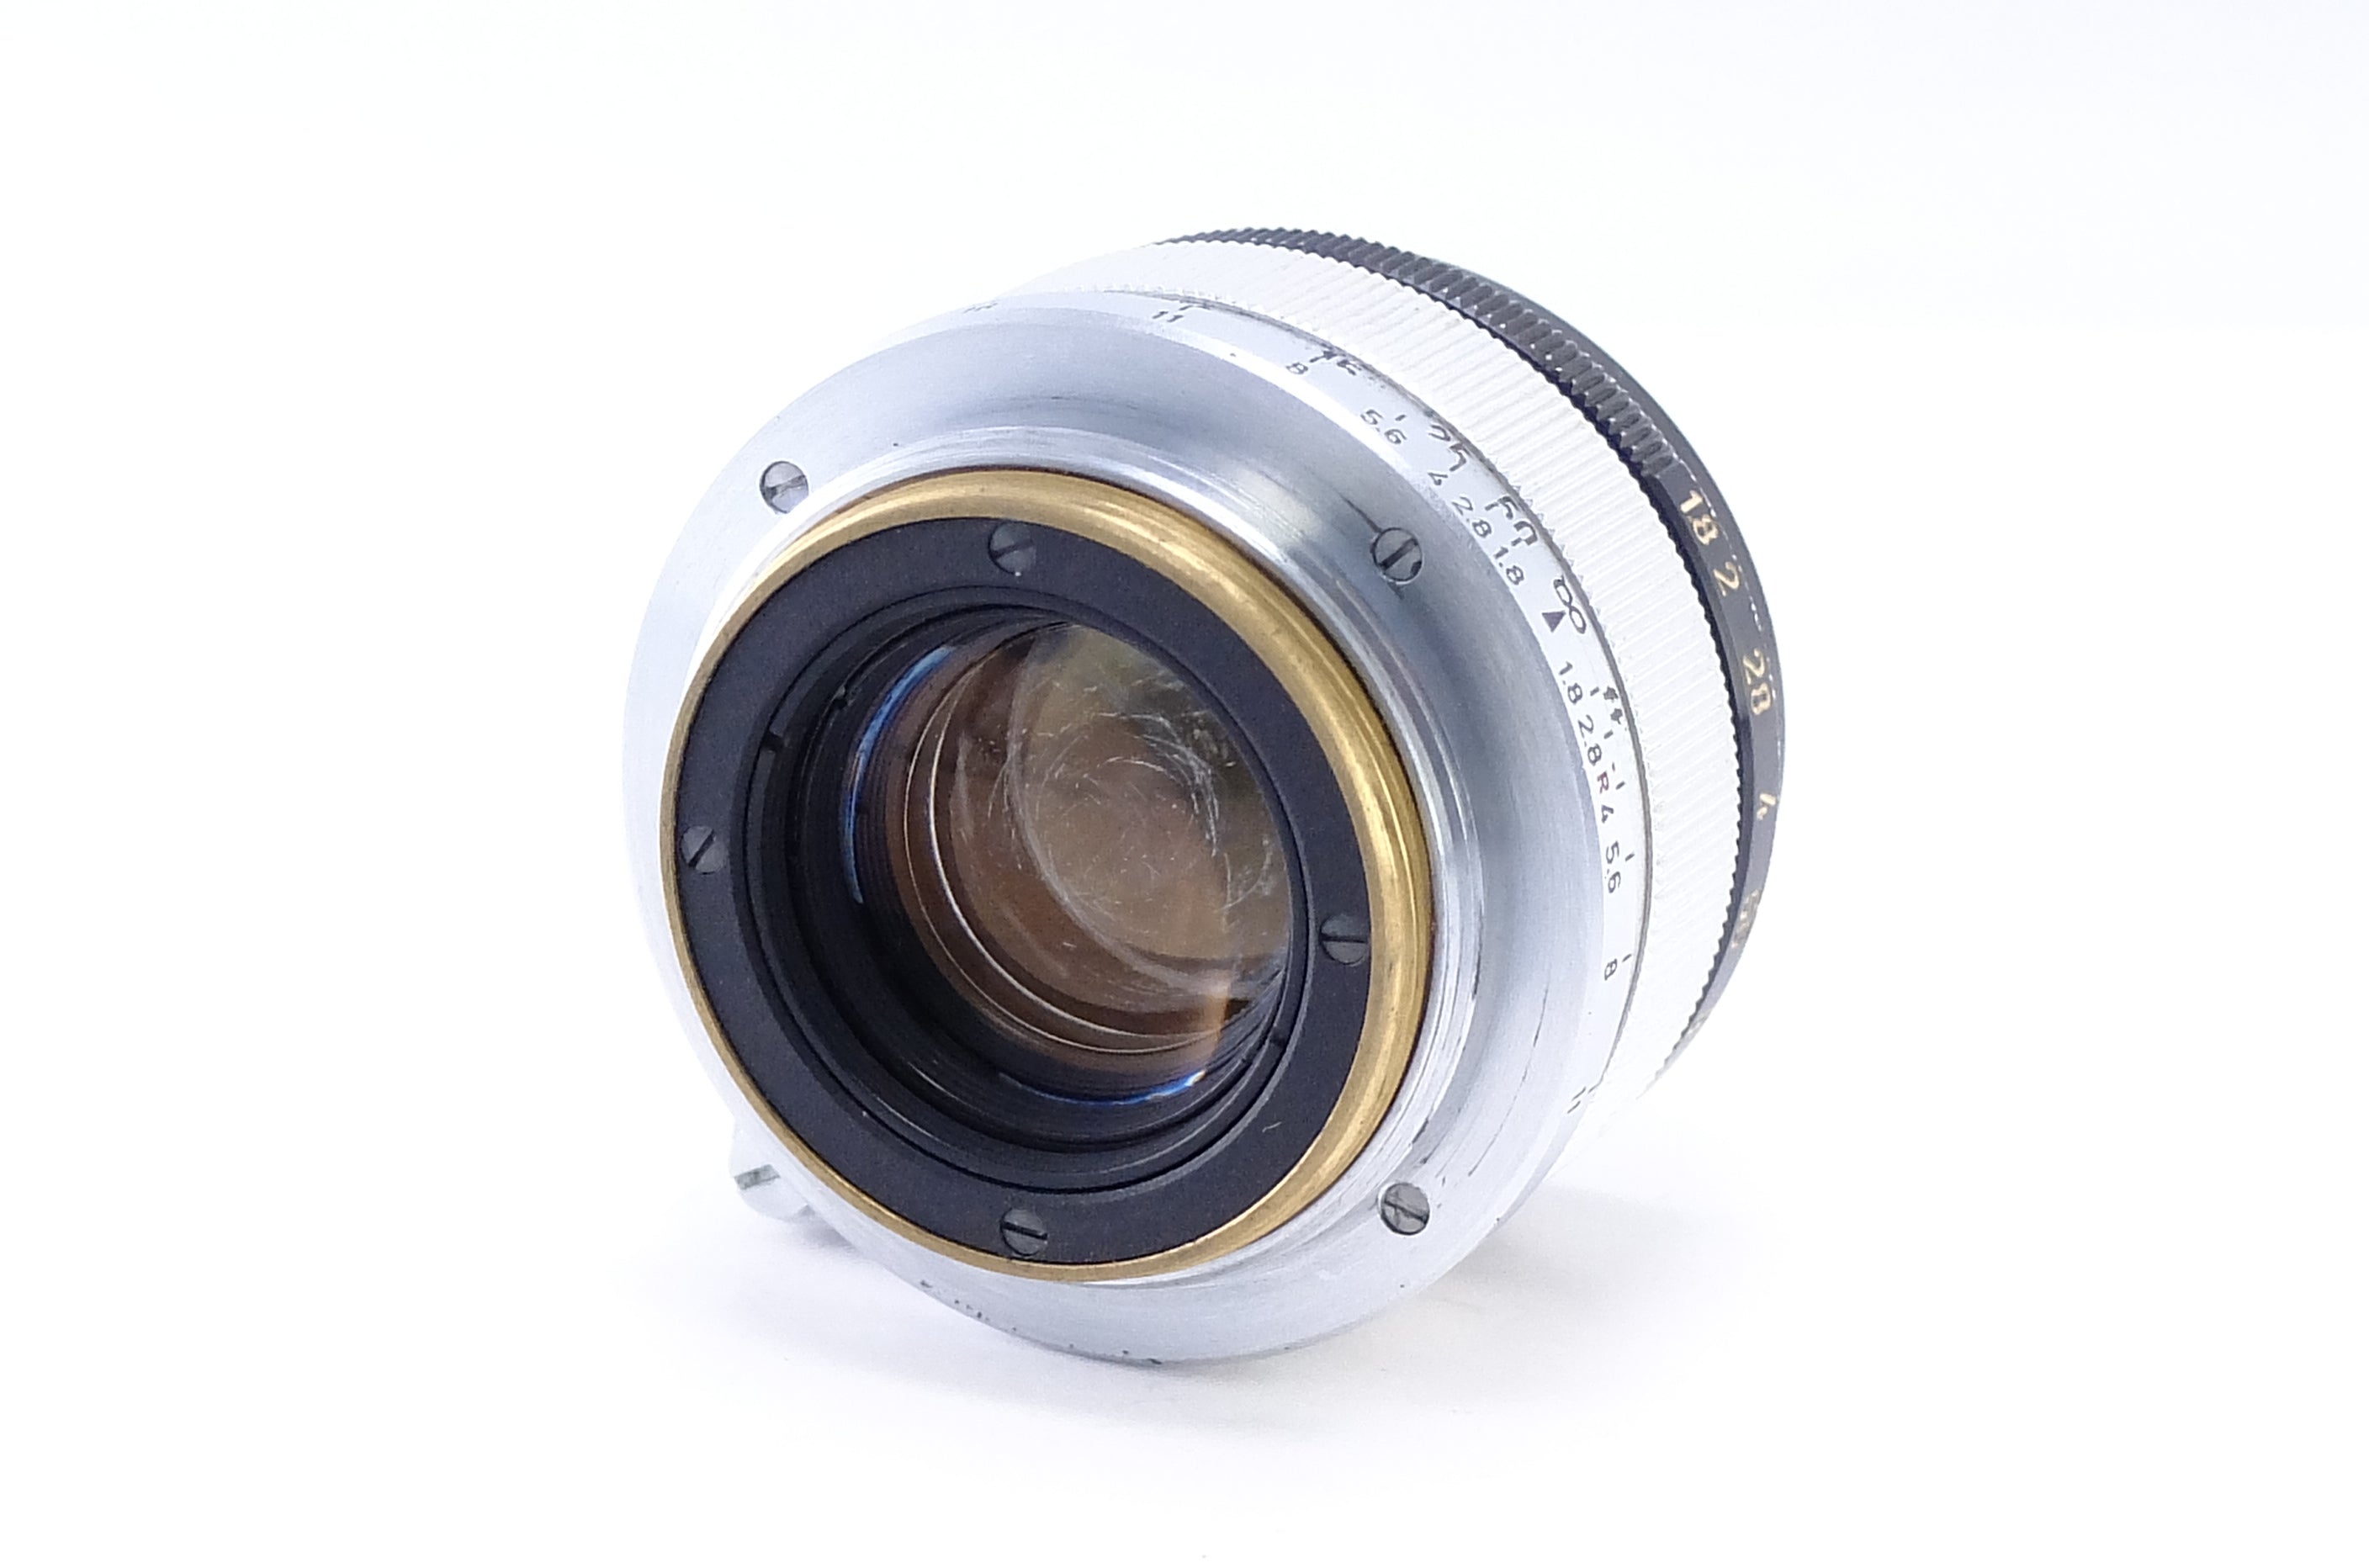 Canon Lens 35mm F1.8 L39マウント絞り環→スムーズです